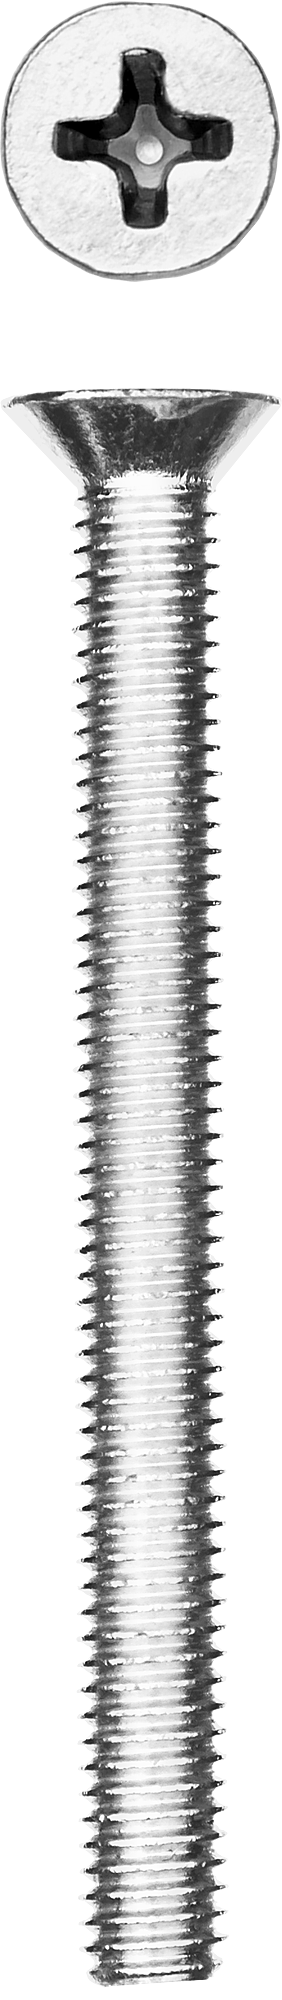 Винт с потайной головкой Зубр 303116-04-040, М4, 4 см, 965 DIN, 4 мм, оцинкованная сталь, 10 шт., фасовка (303116-04-040)